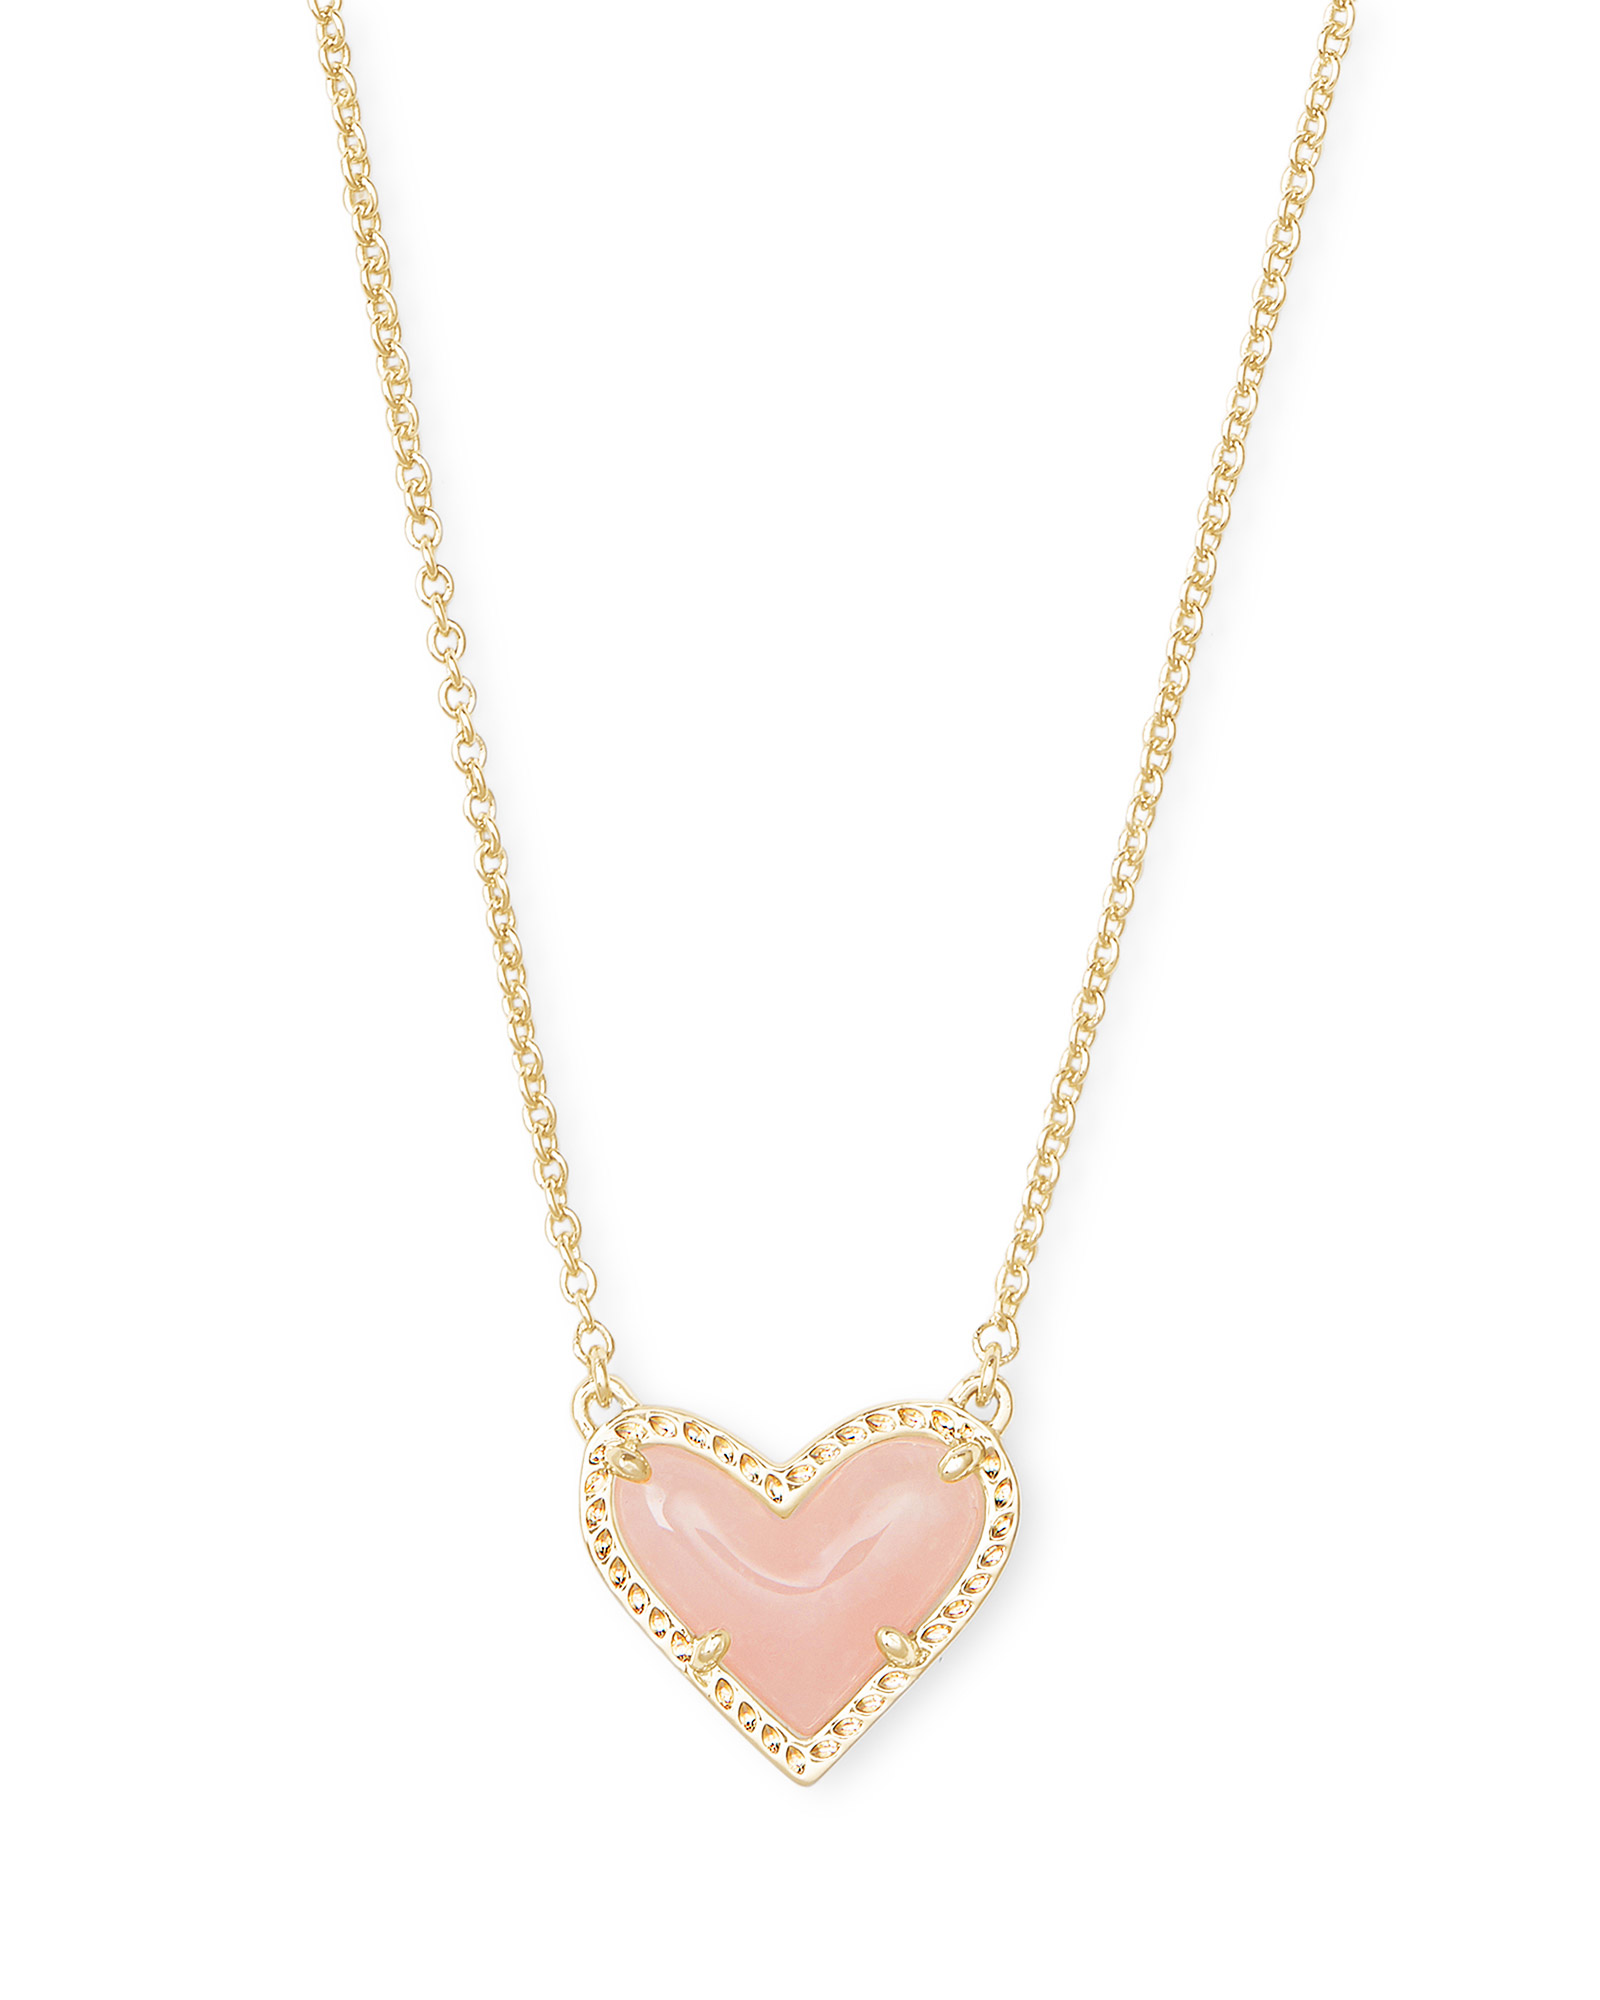 Ari Heart Gold Pendant Necklace in Rose Quartz | Kendra Scott